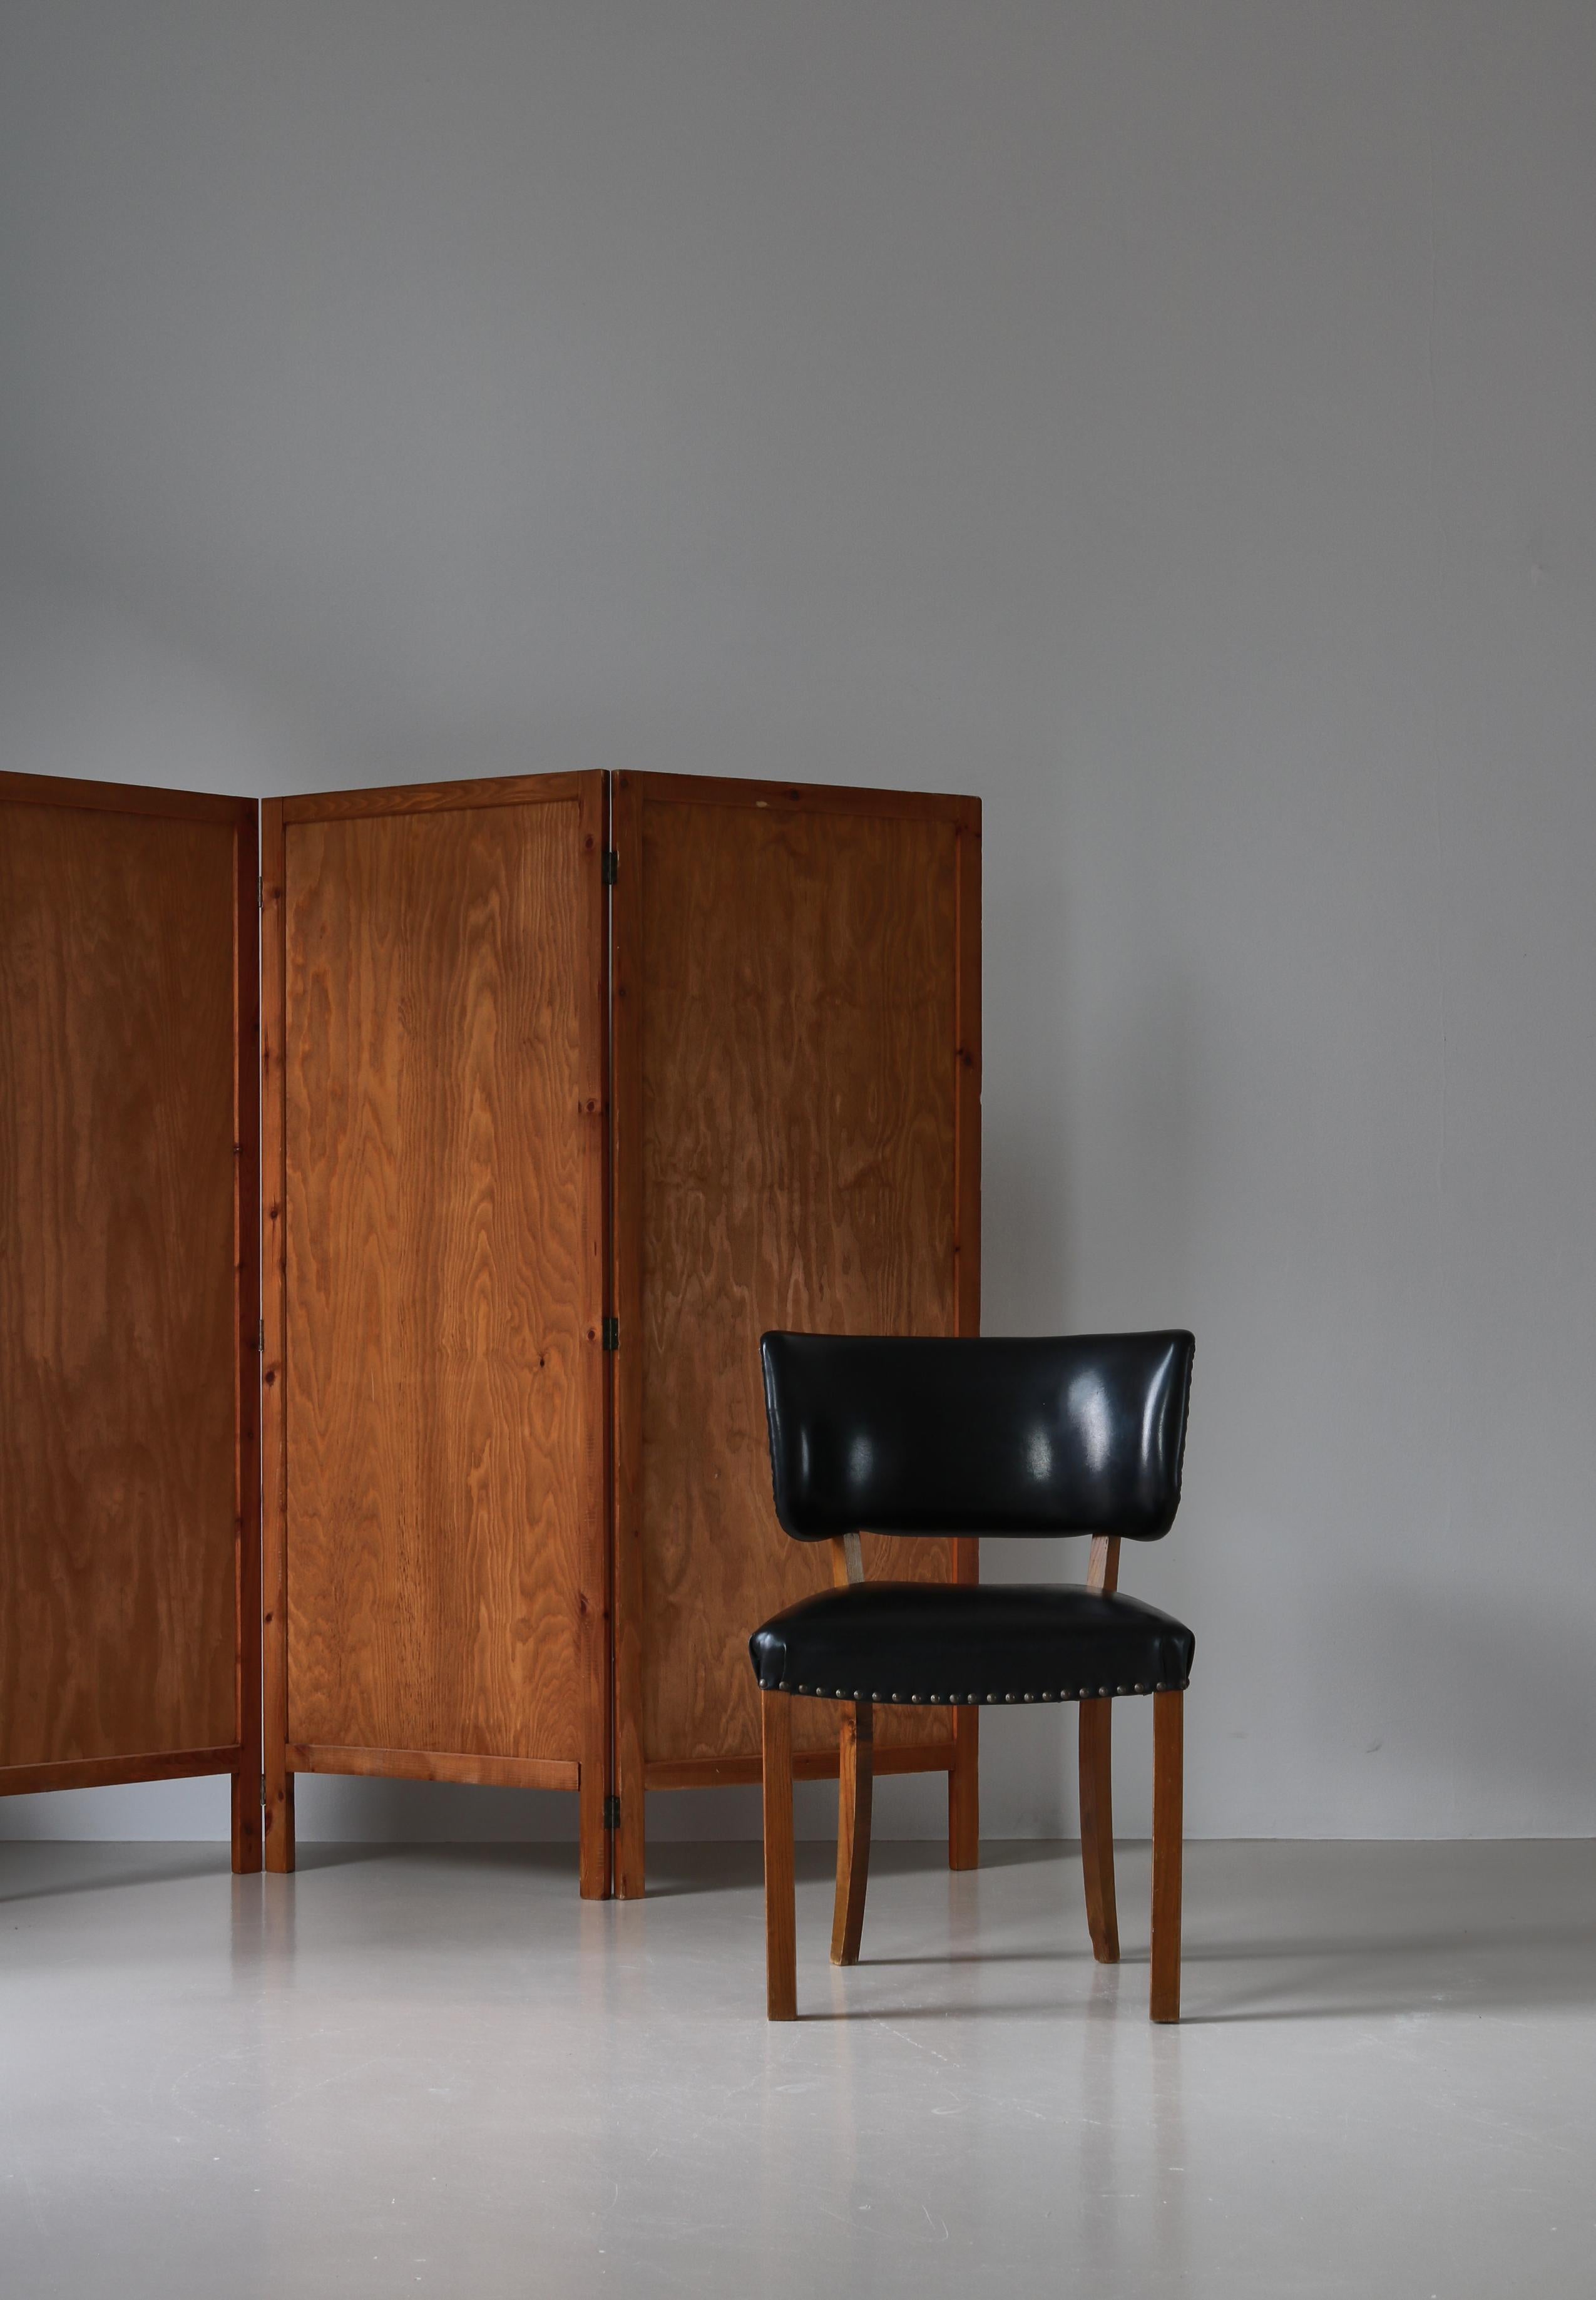 Ensemble de chaises d'appoint modernes danoises fabriquées dans les années 1940 et attribuées à l'architecte danois Magnus Stephensen. Exécuté en orme massif et en similicuir noir. Des chaises Bigli aux merveilleuses courbes organiques.

Très